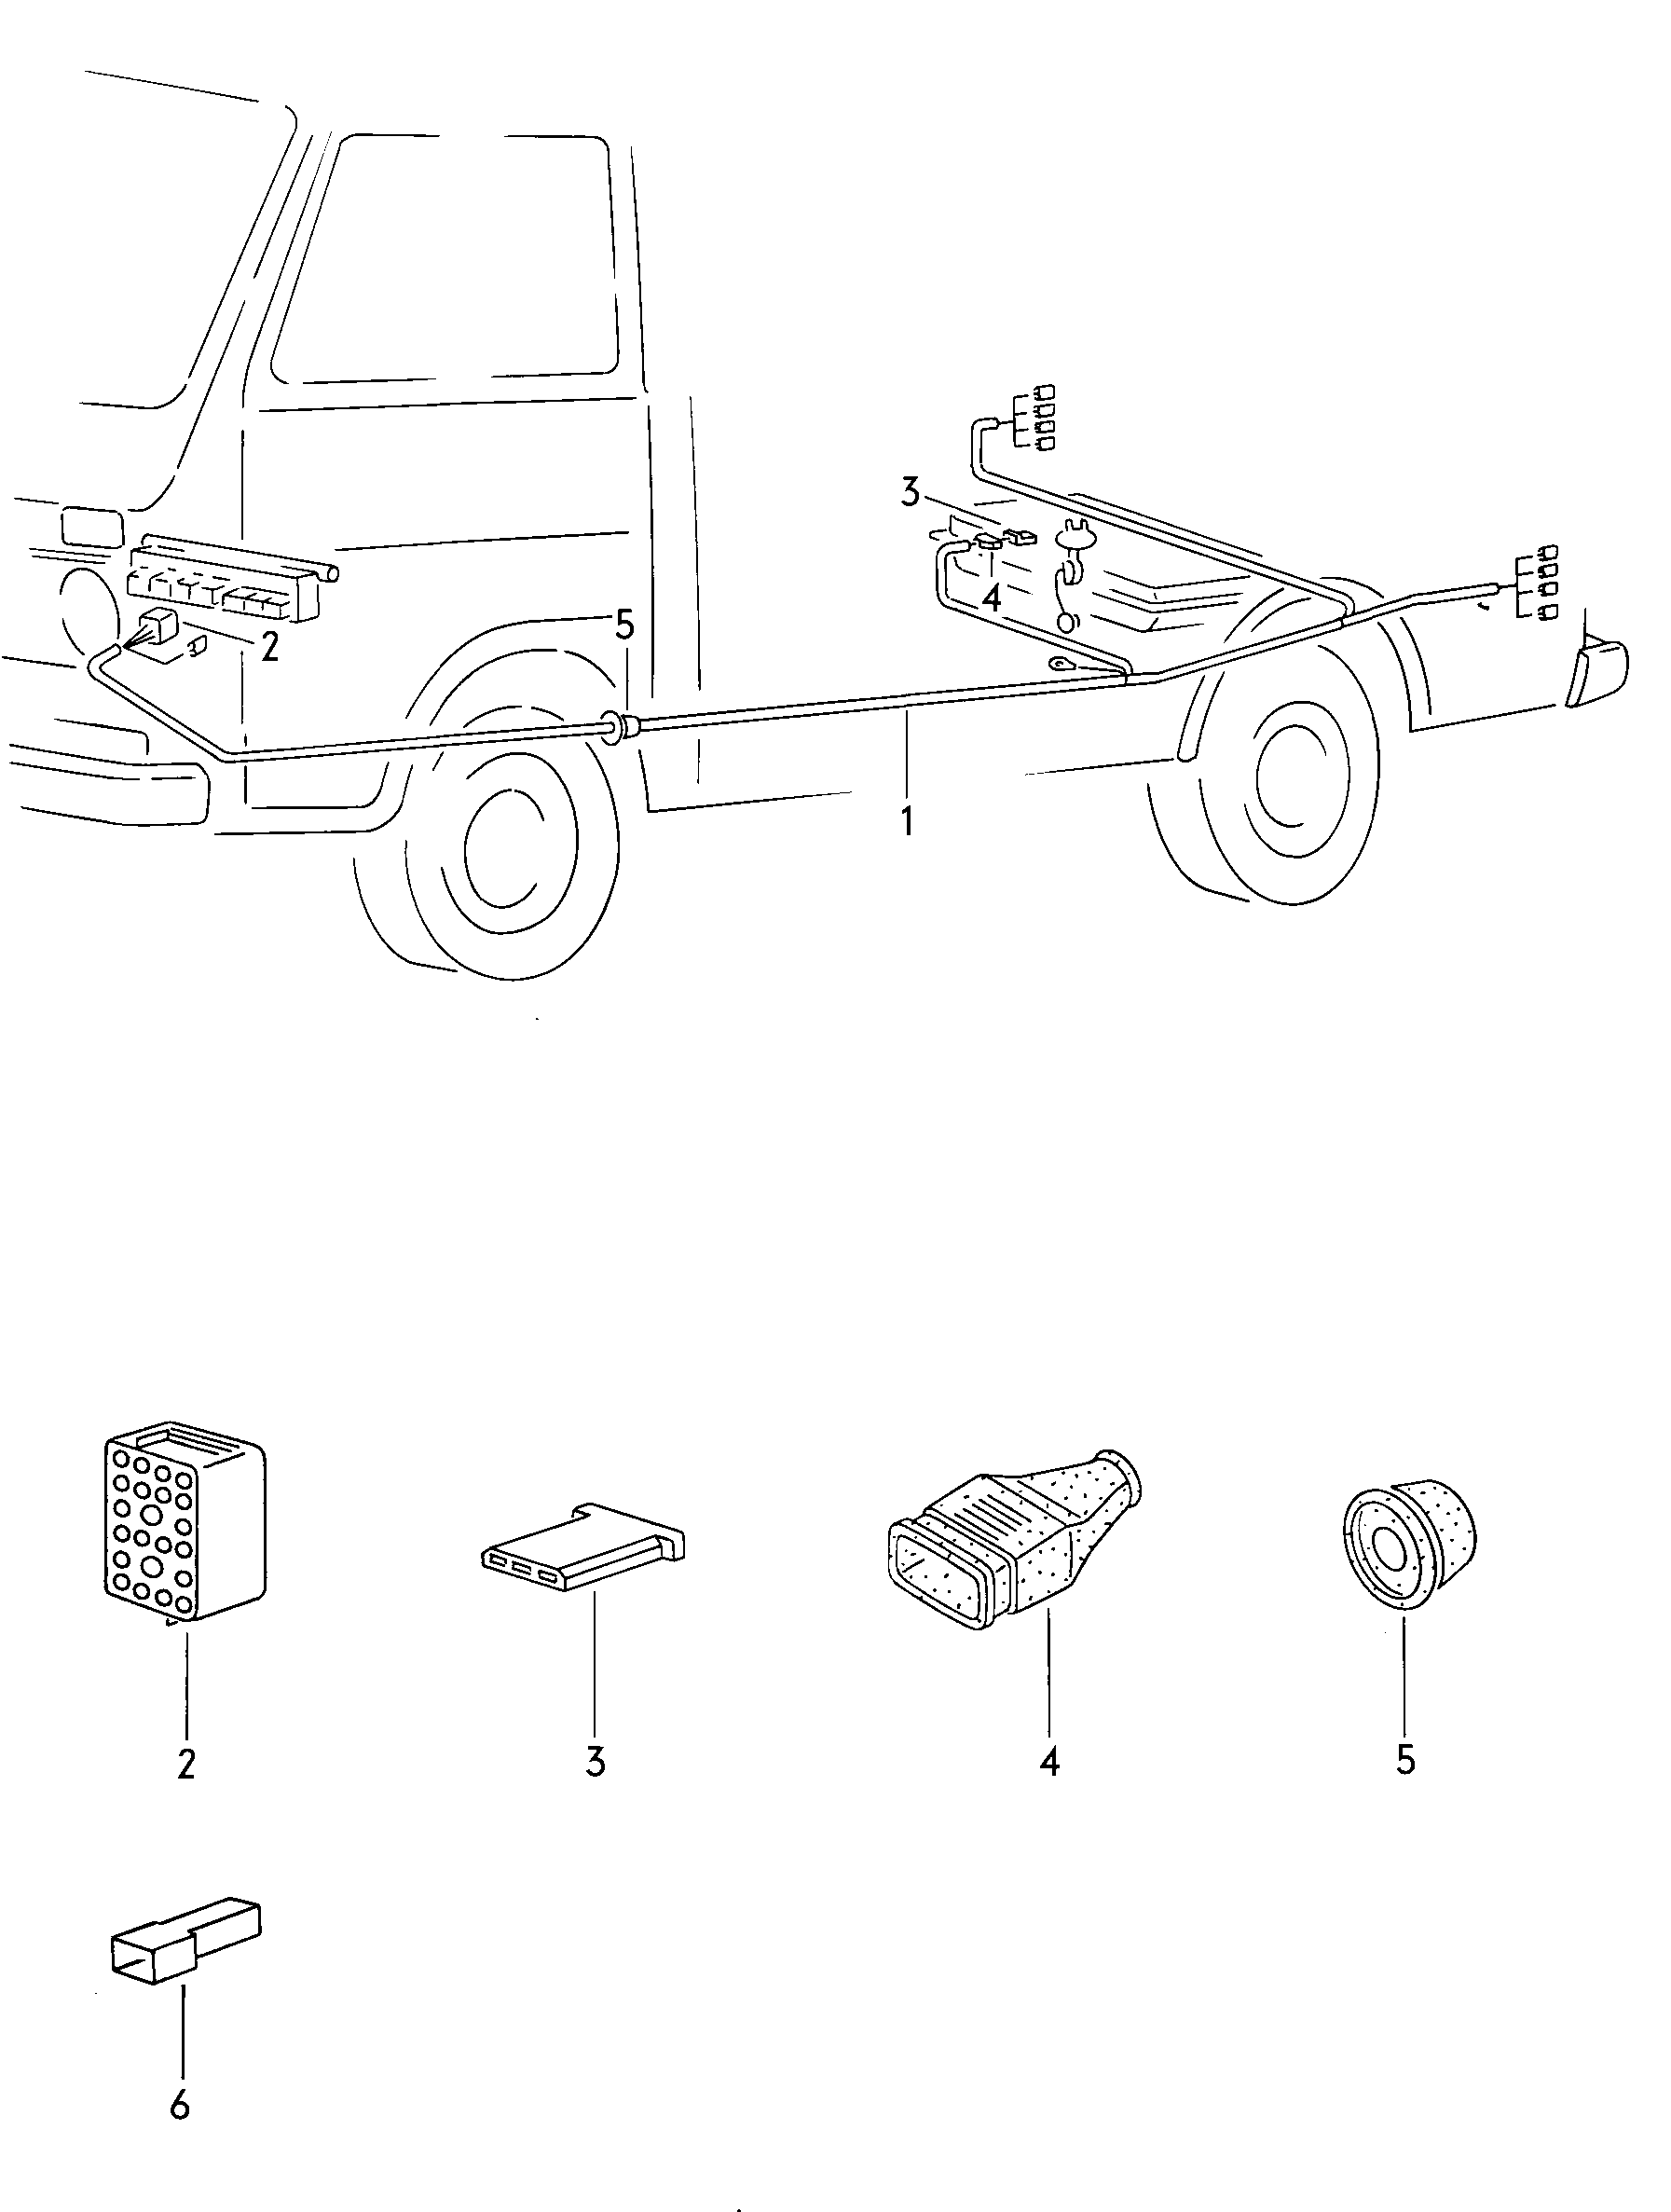 Individual parts  - LT, LT 4x4 - lt